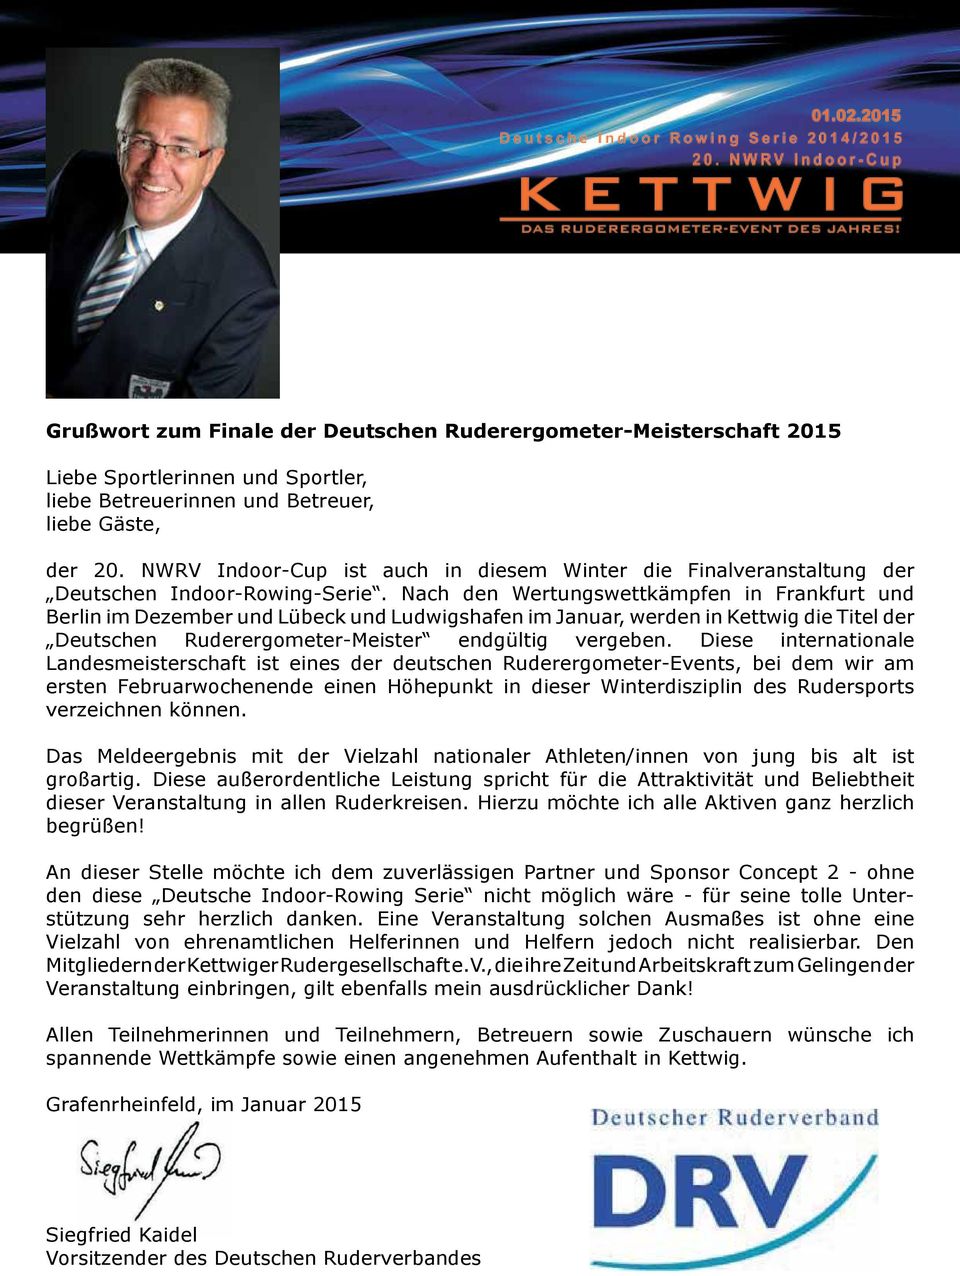 Nach den Wertungswettkämpfen in Frankfurt und Berlin im Dezember und Lübeck und Ludwigshafen im Januar, werden in Kettwig die Titel der Deutschen Ruderergometer-Meister endgültig vergeben.